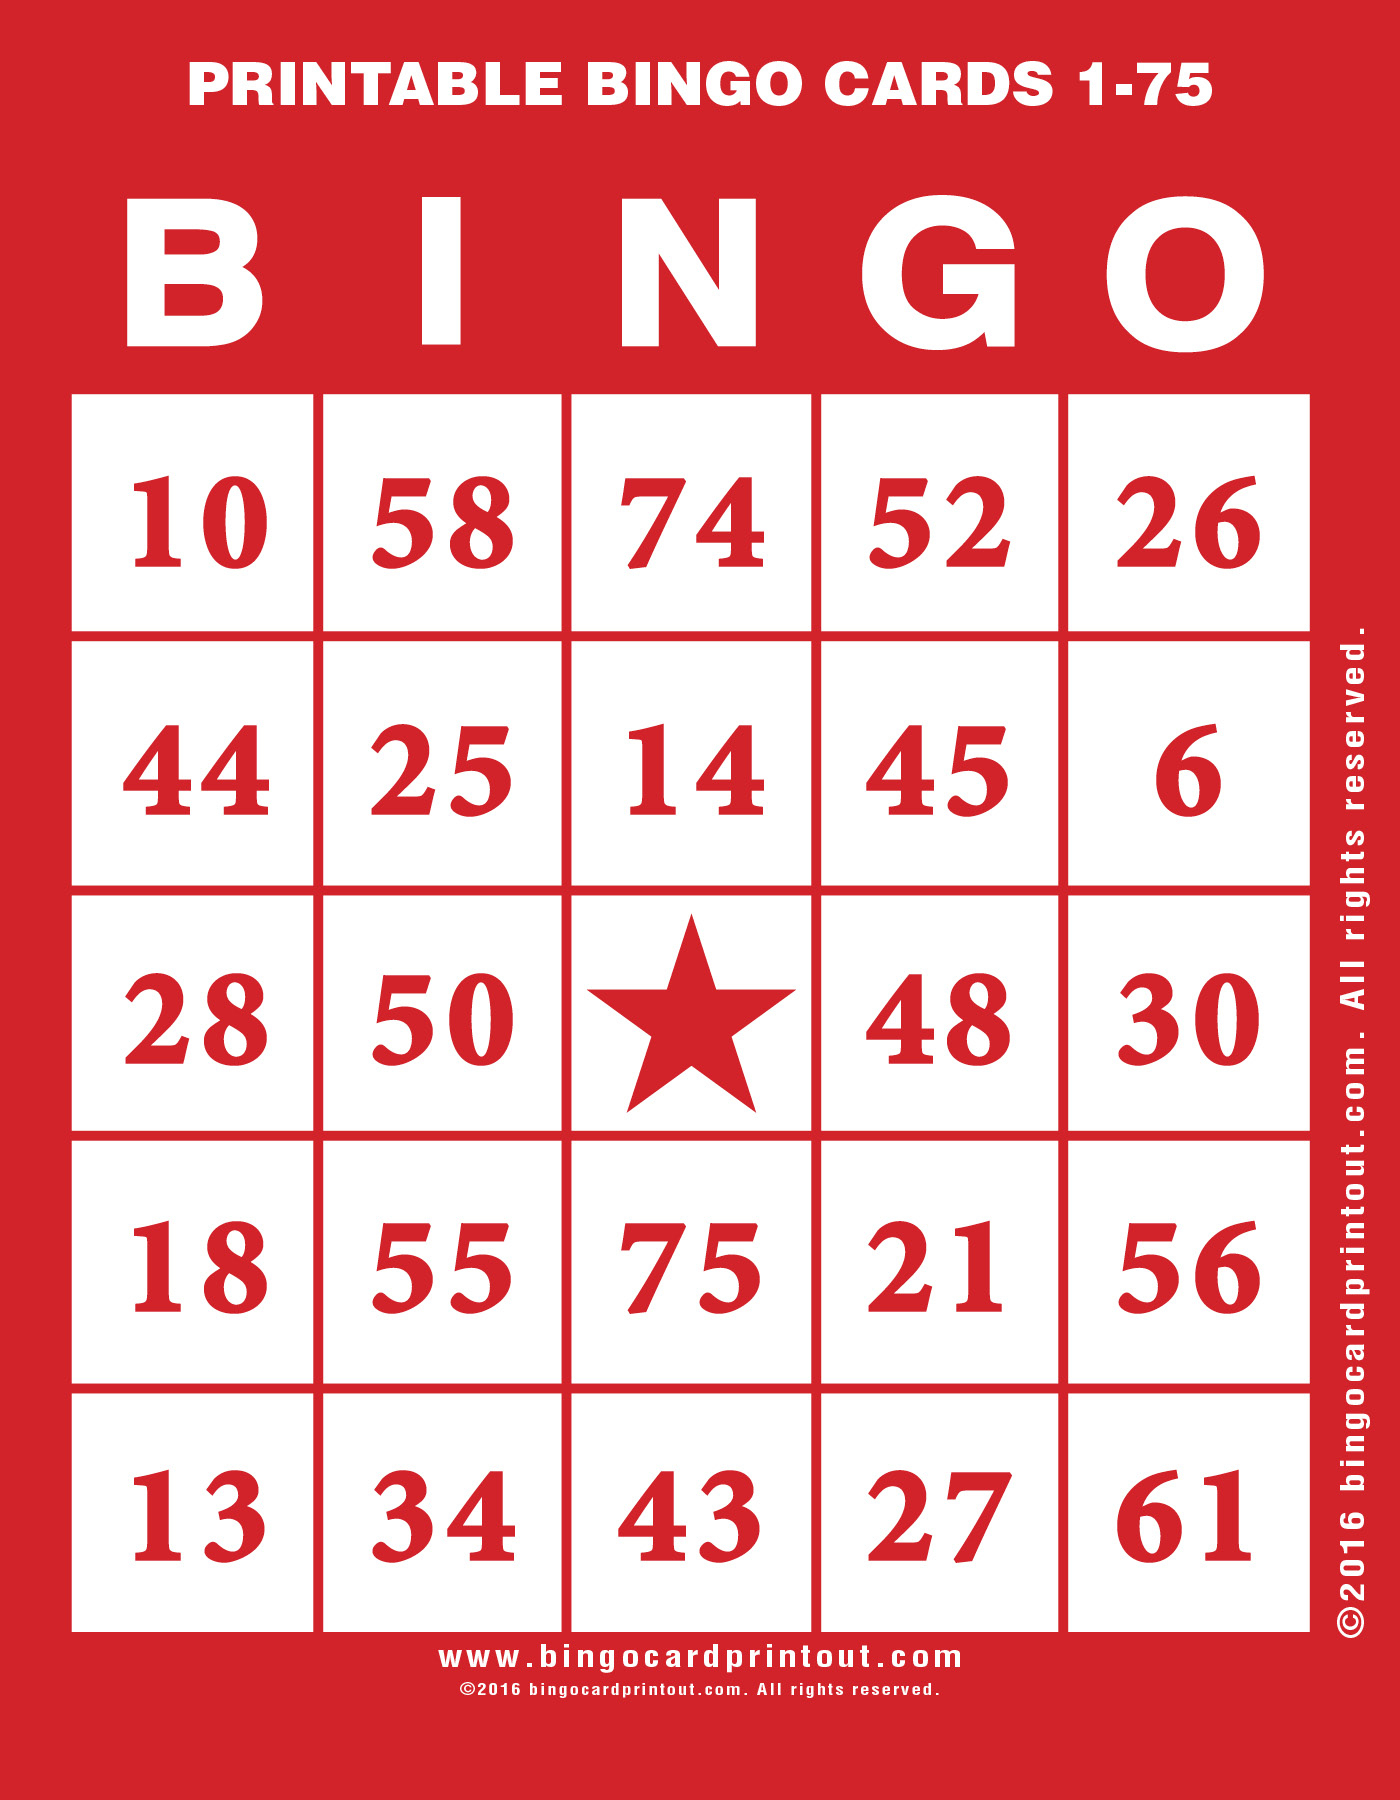 Printable Bingo Cards 1-75 - Bingocardprintout